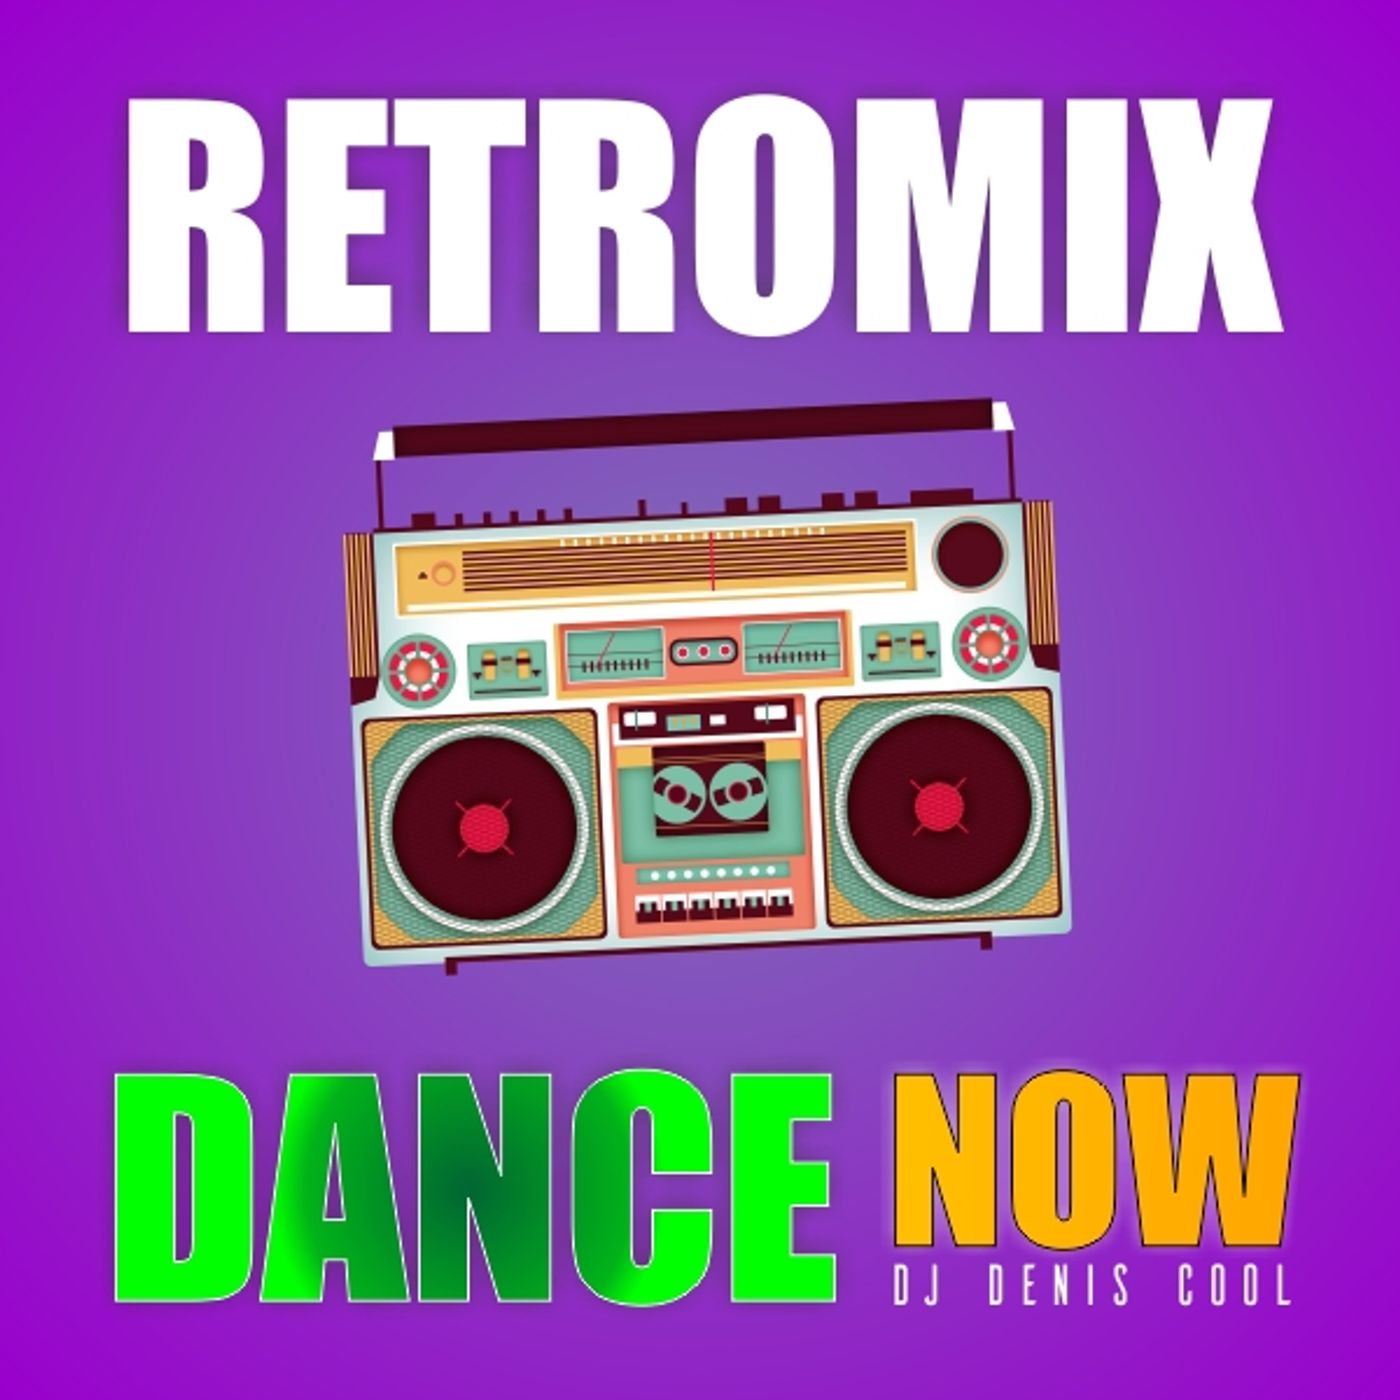 RetroMix Dance Now by DJ Denis